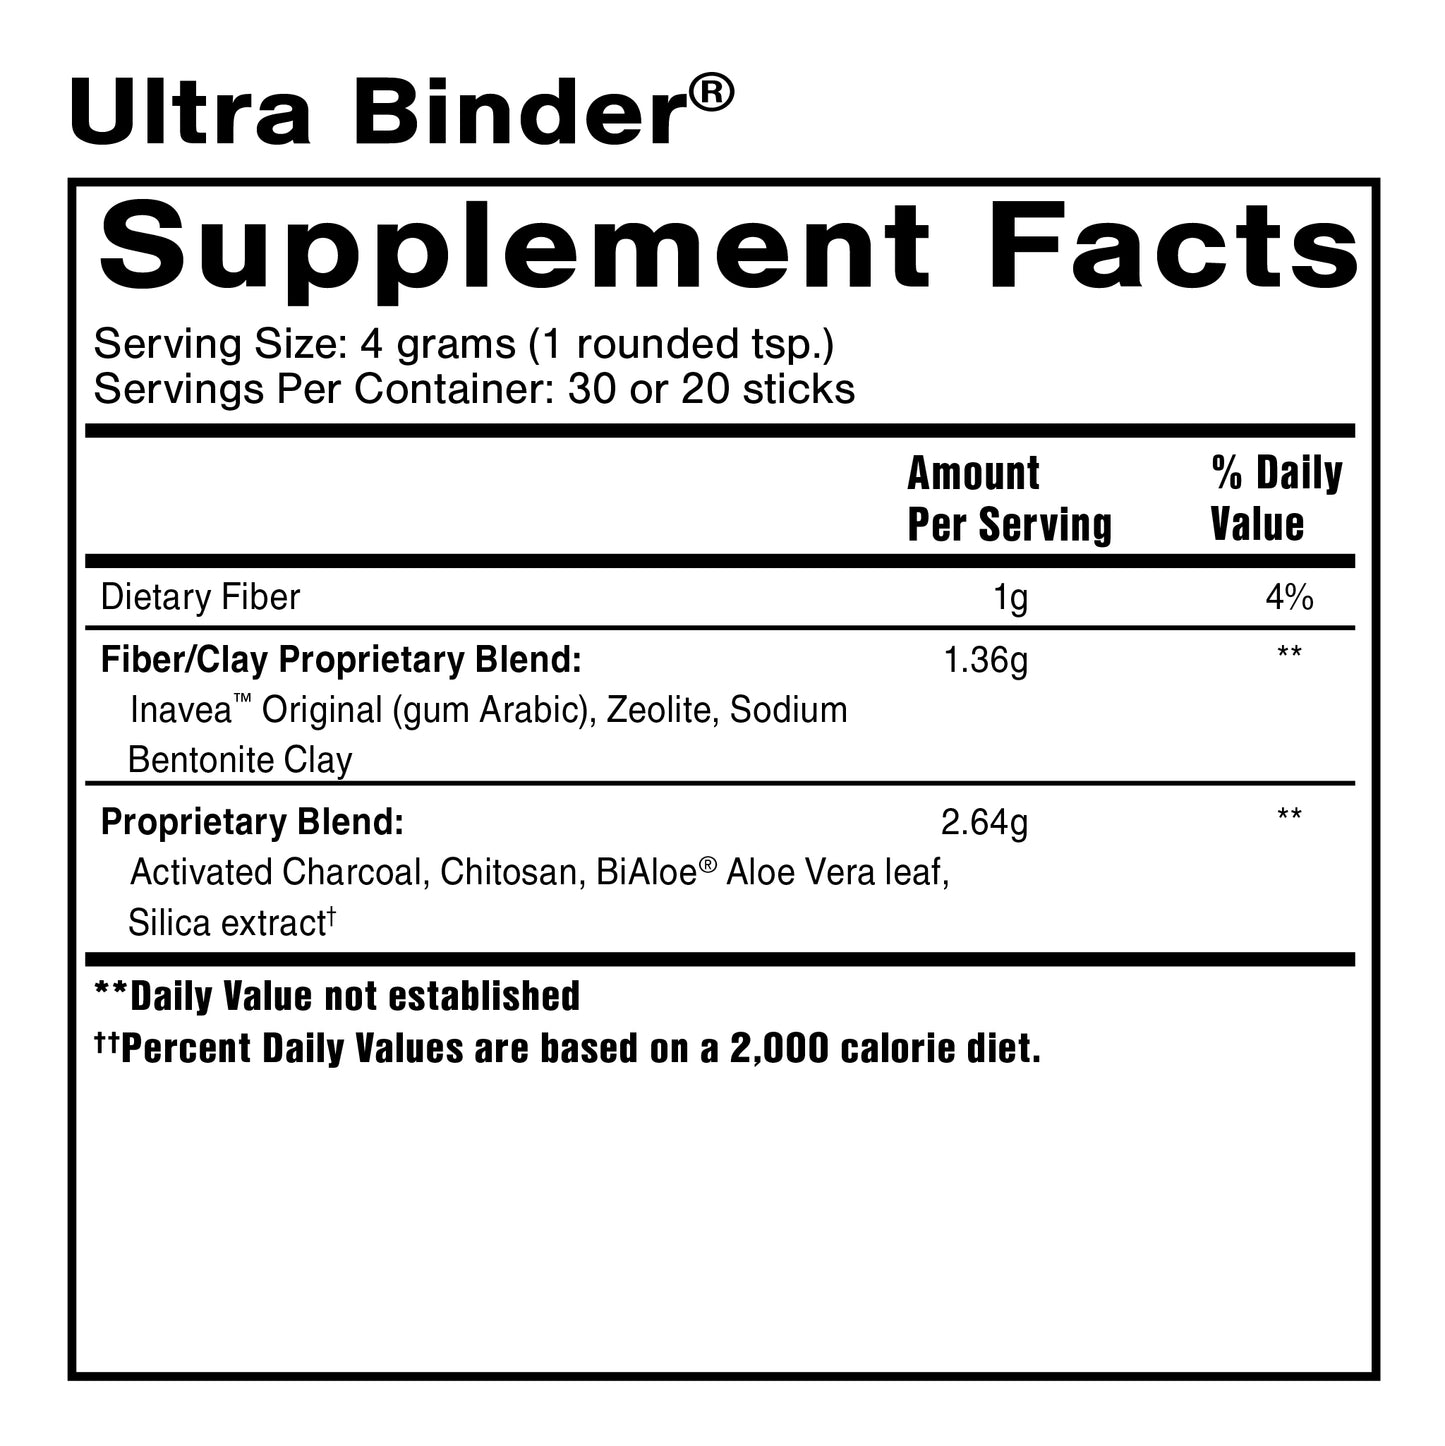 Ultra Binder®